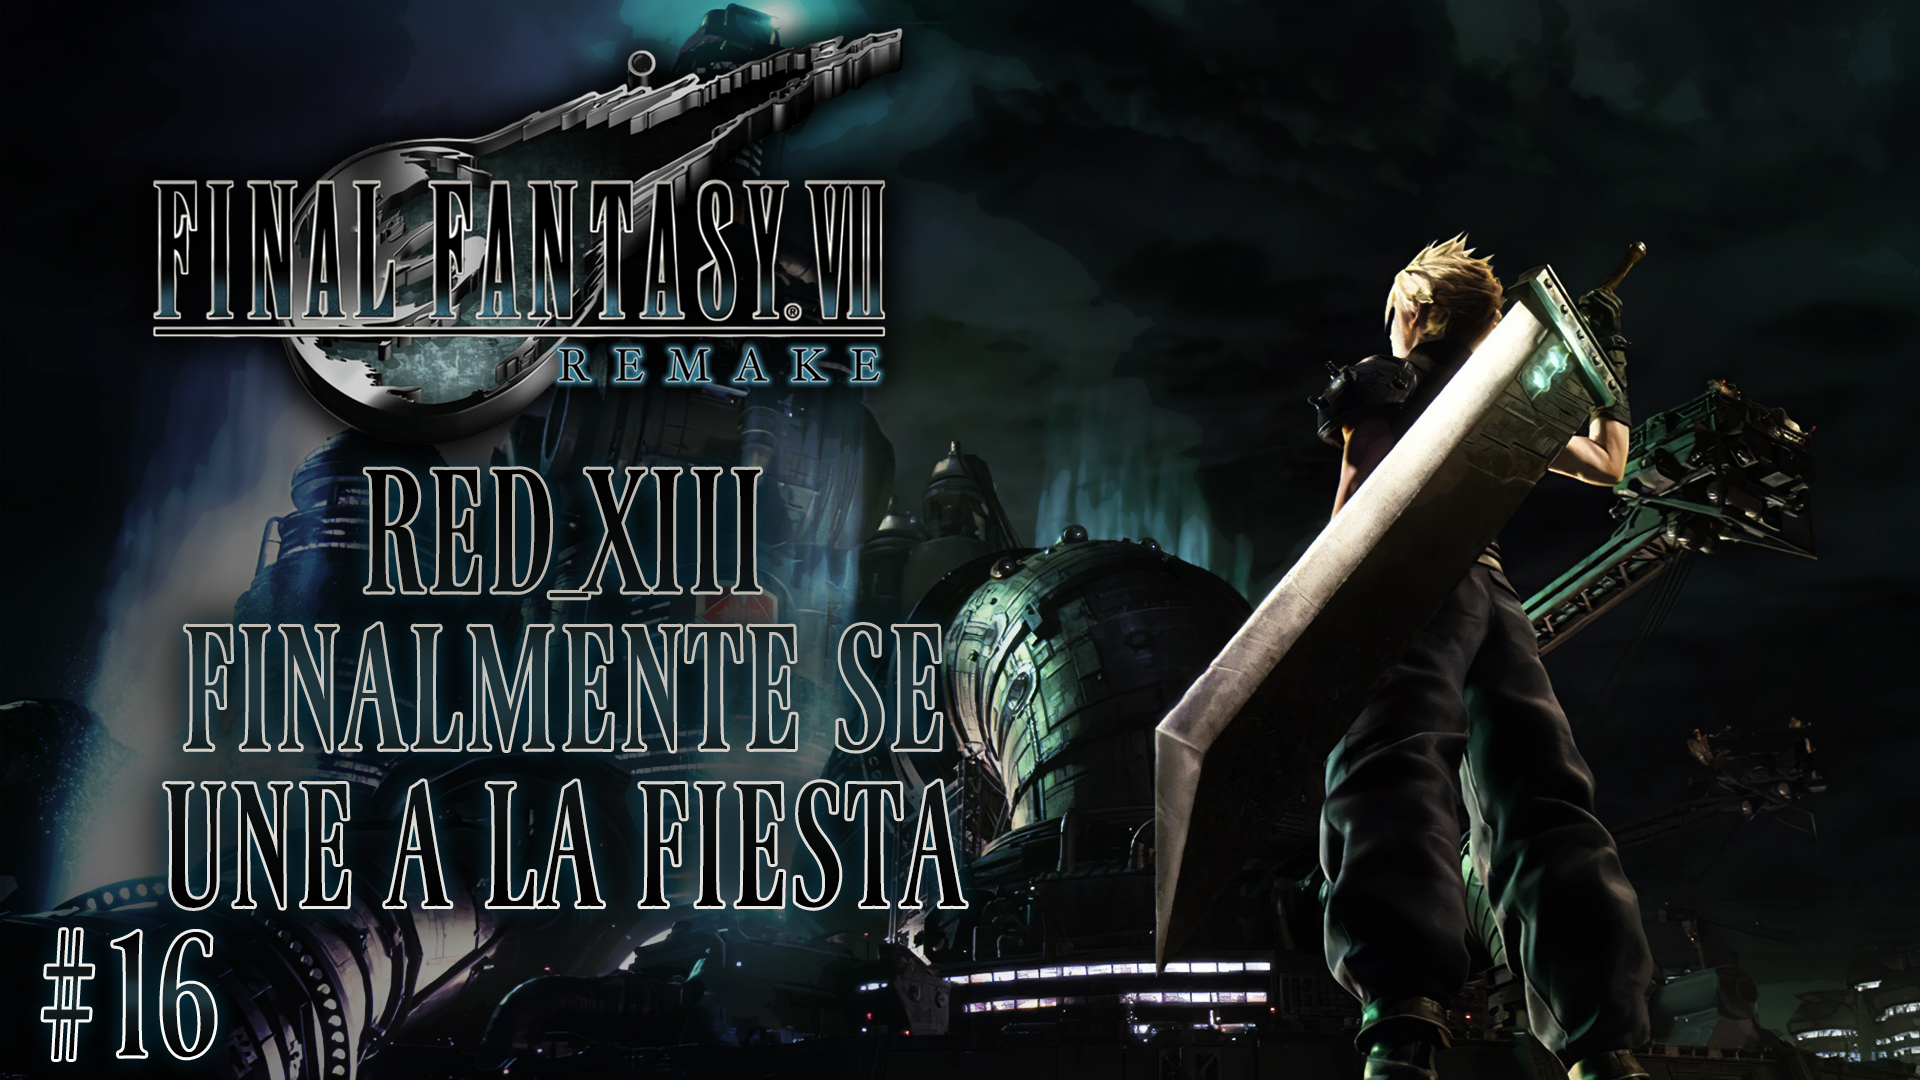 Serie Final Fantasy VII Remake #16 – Red XIII Finalmente se une a la fiesta